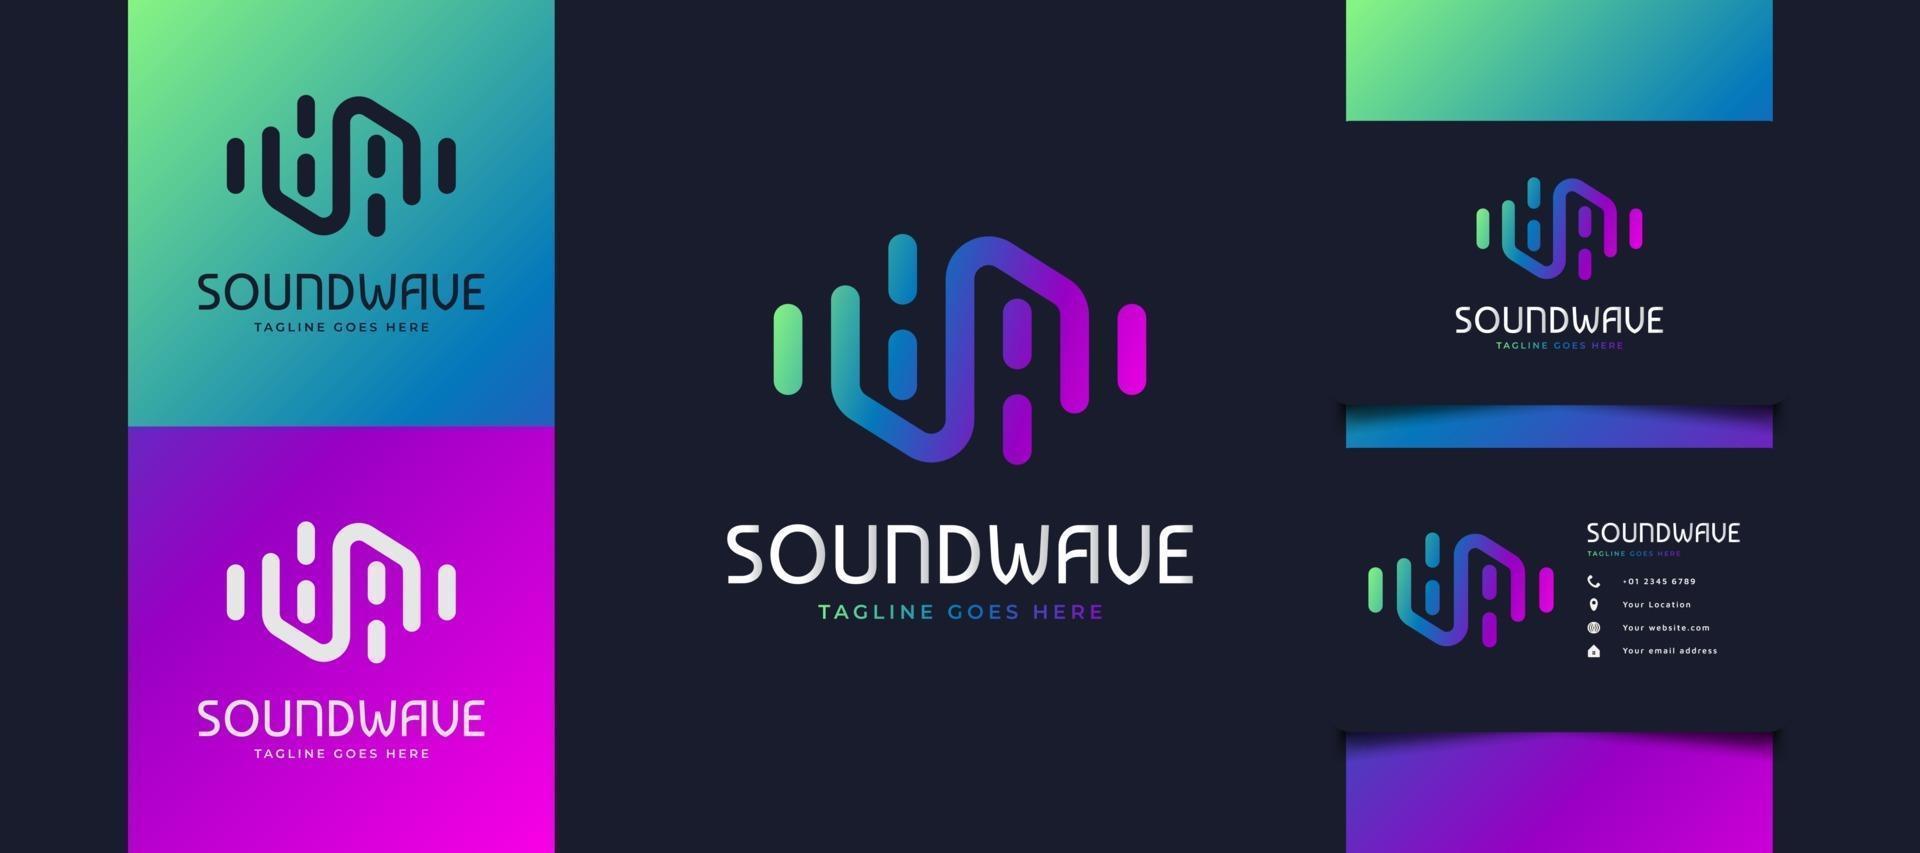 design colorato del logo dell'onda sonora, adatto per studi musicali o loghi tecnologici. modello di progettazione logo equalizzatore vettore